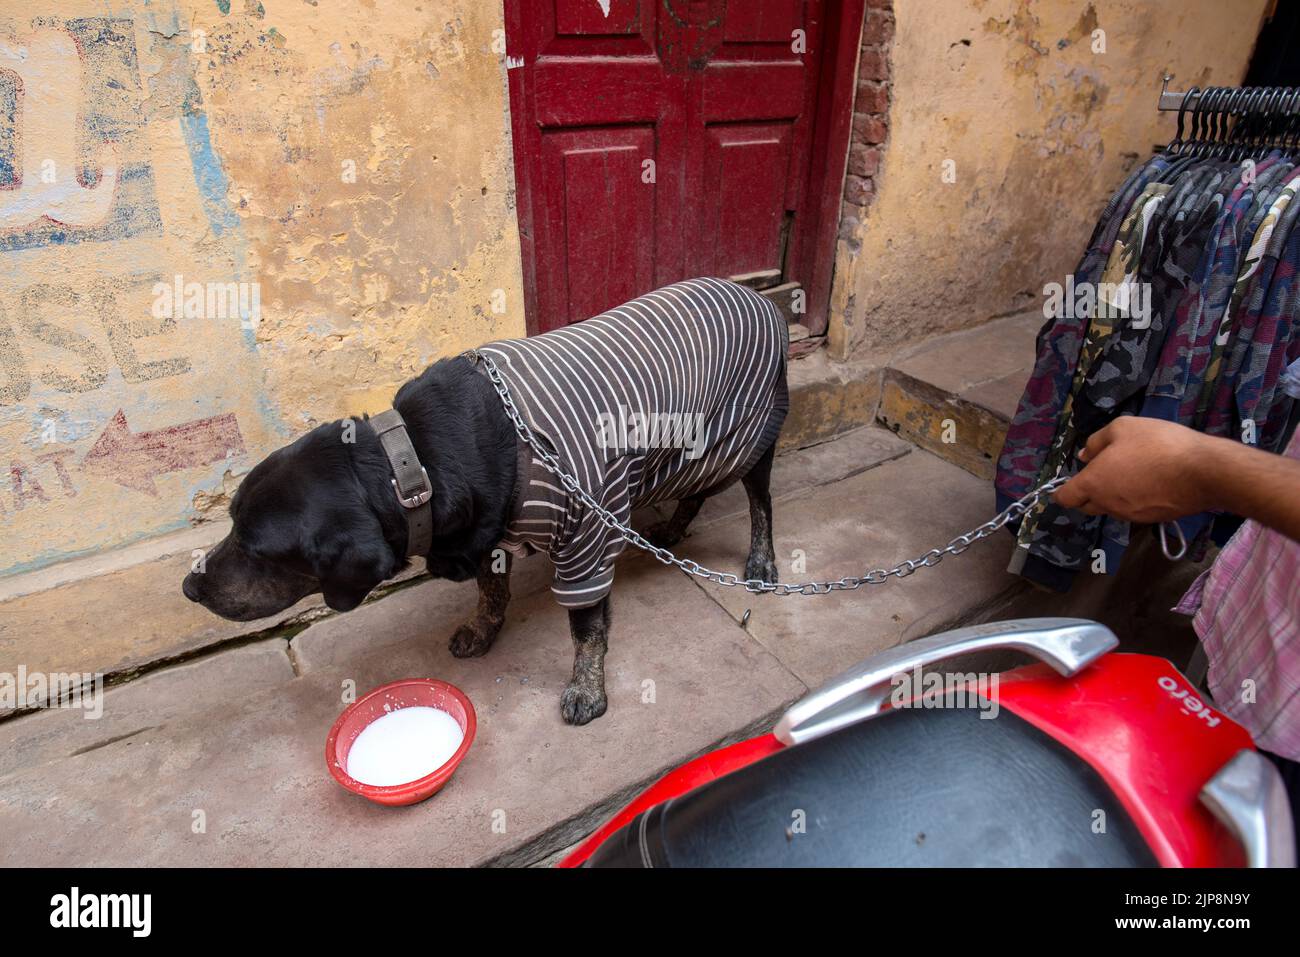 Labrador Retriever dog breed drinking milk, Varanasi, Banaras, Benaras, Kashi, Uttar Pradesh, India Stock Photo